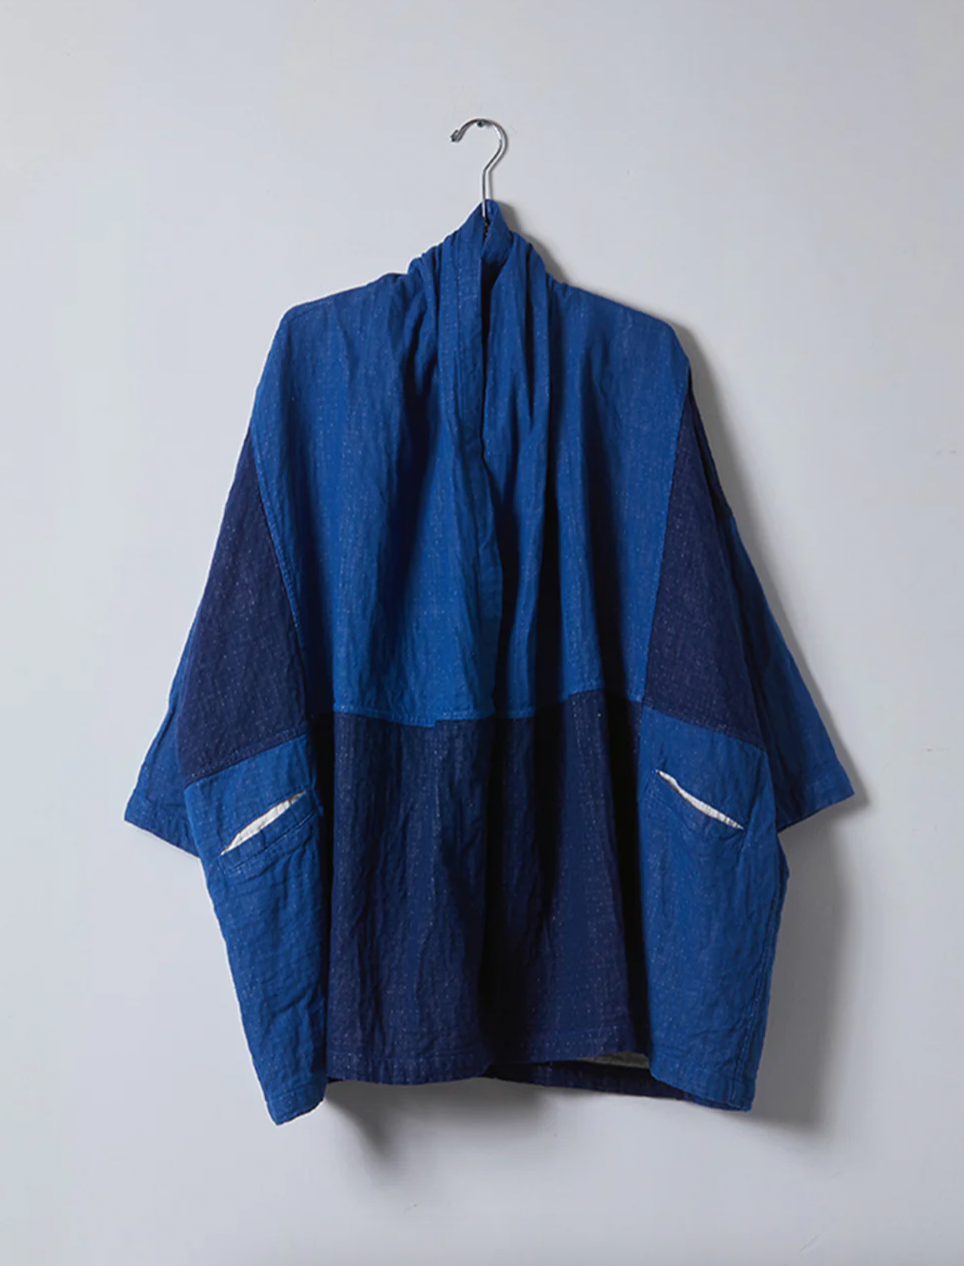 Product Image for Haori Coat Patchwork, Blue / Indigo Patchwork